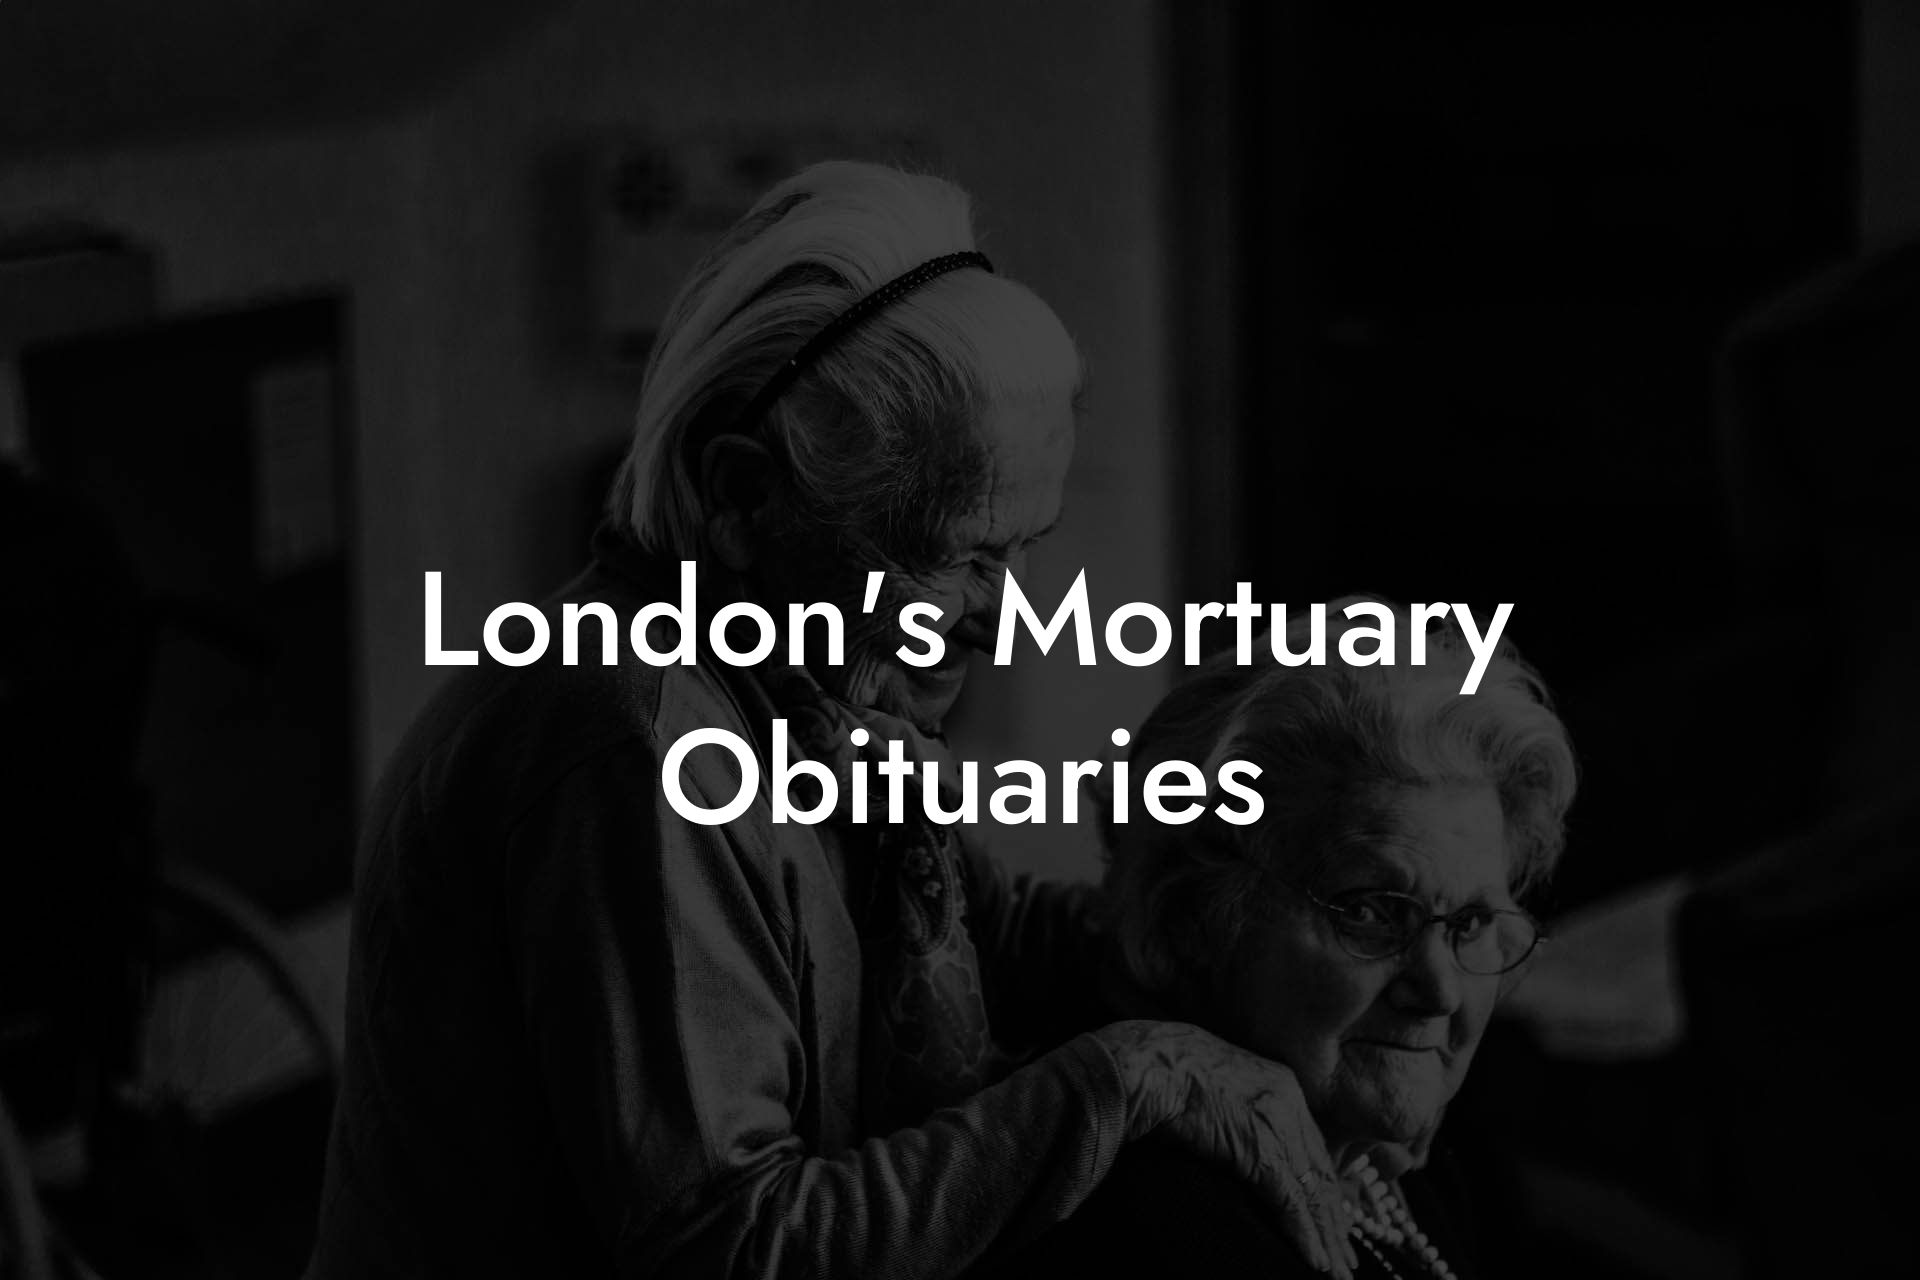 London's Mortuary Obituaries